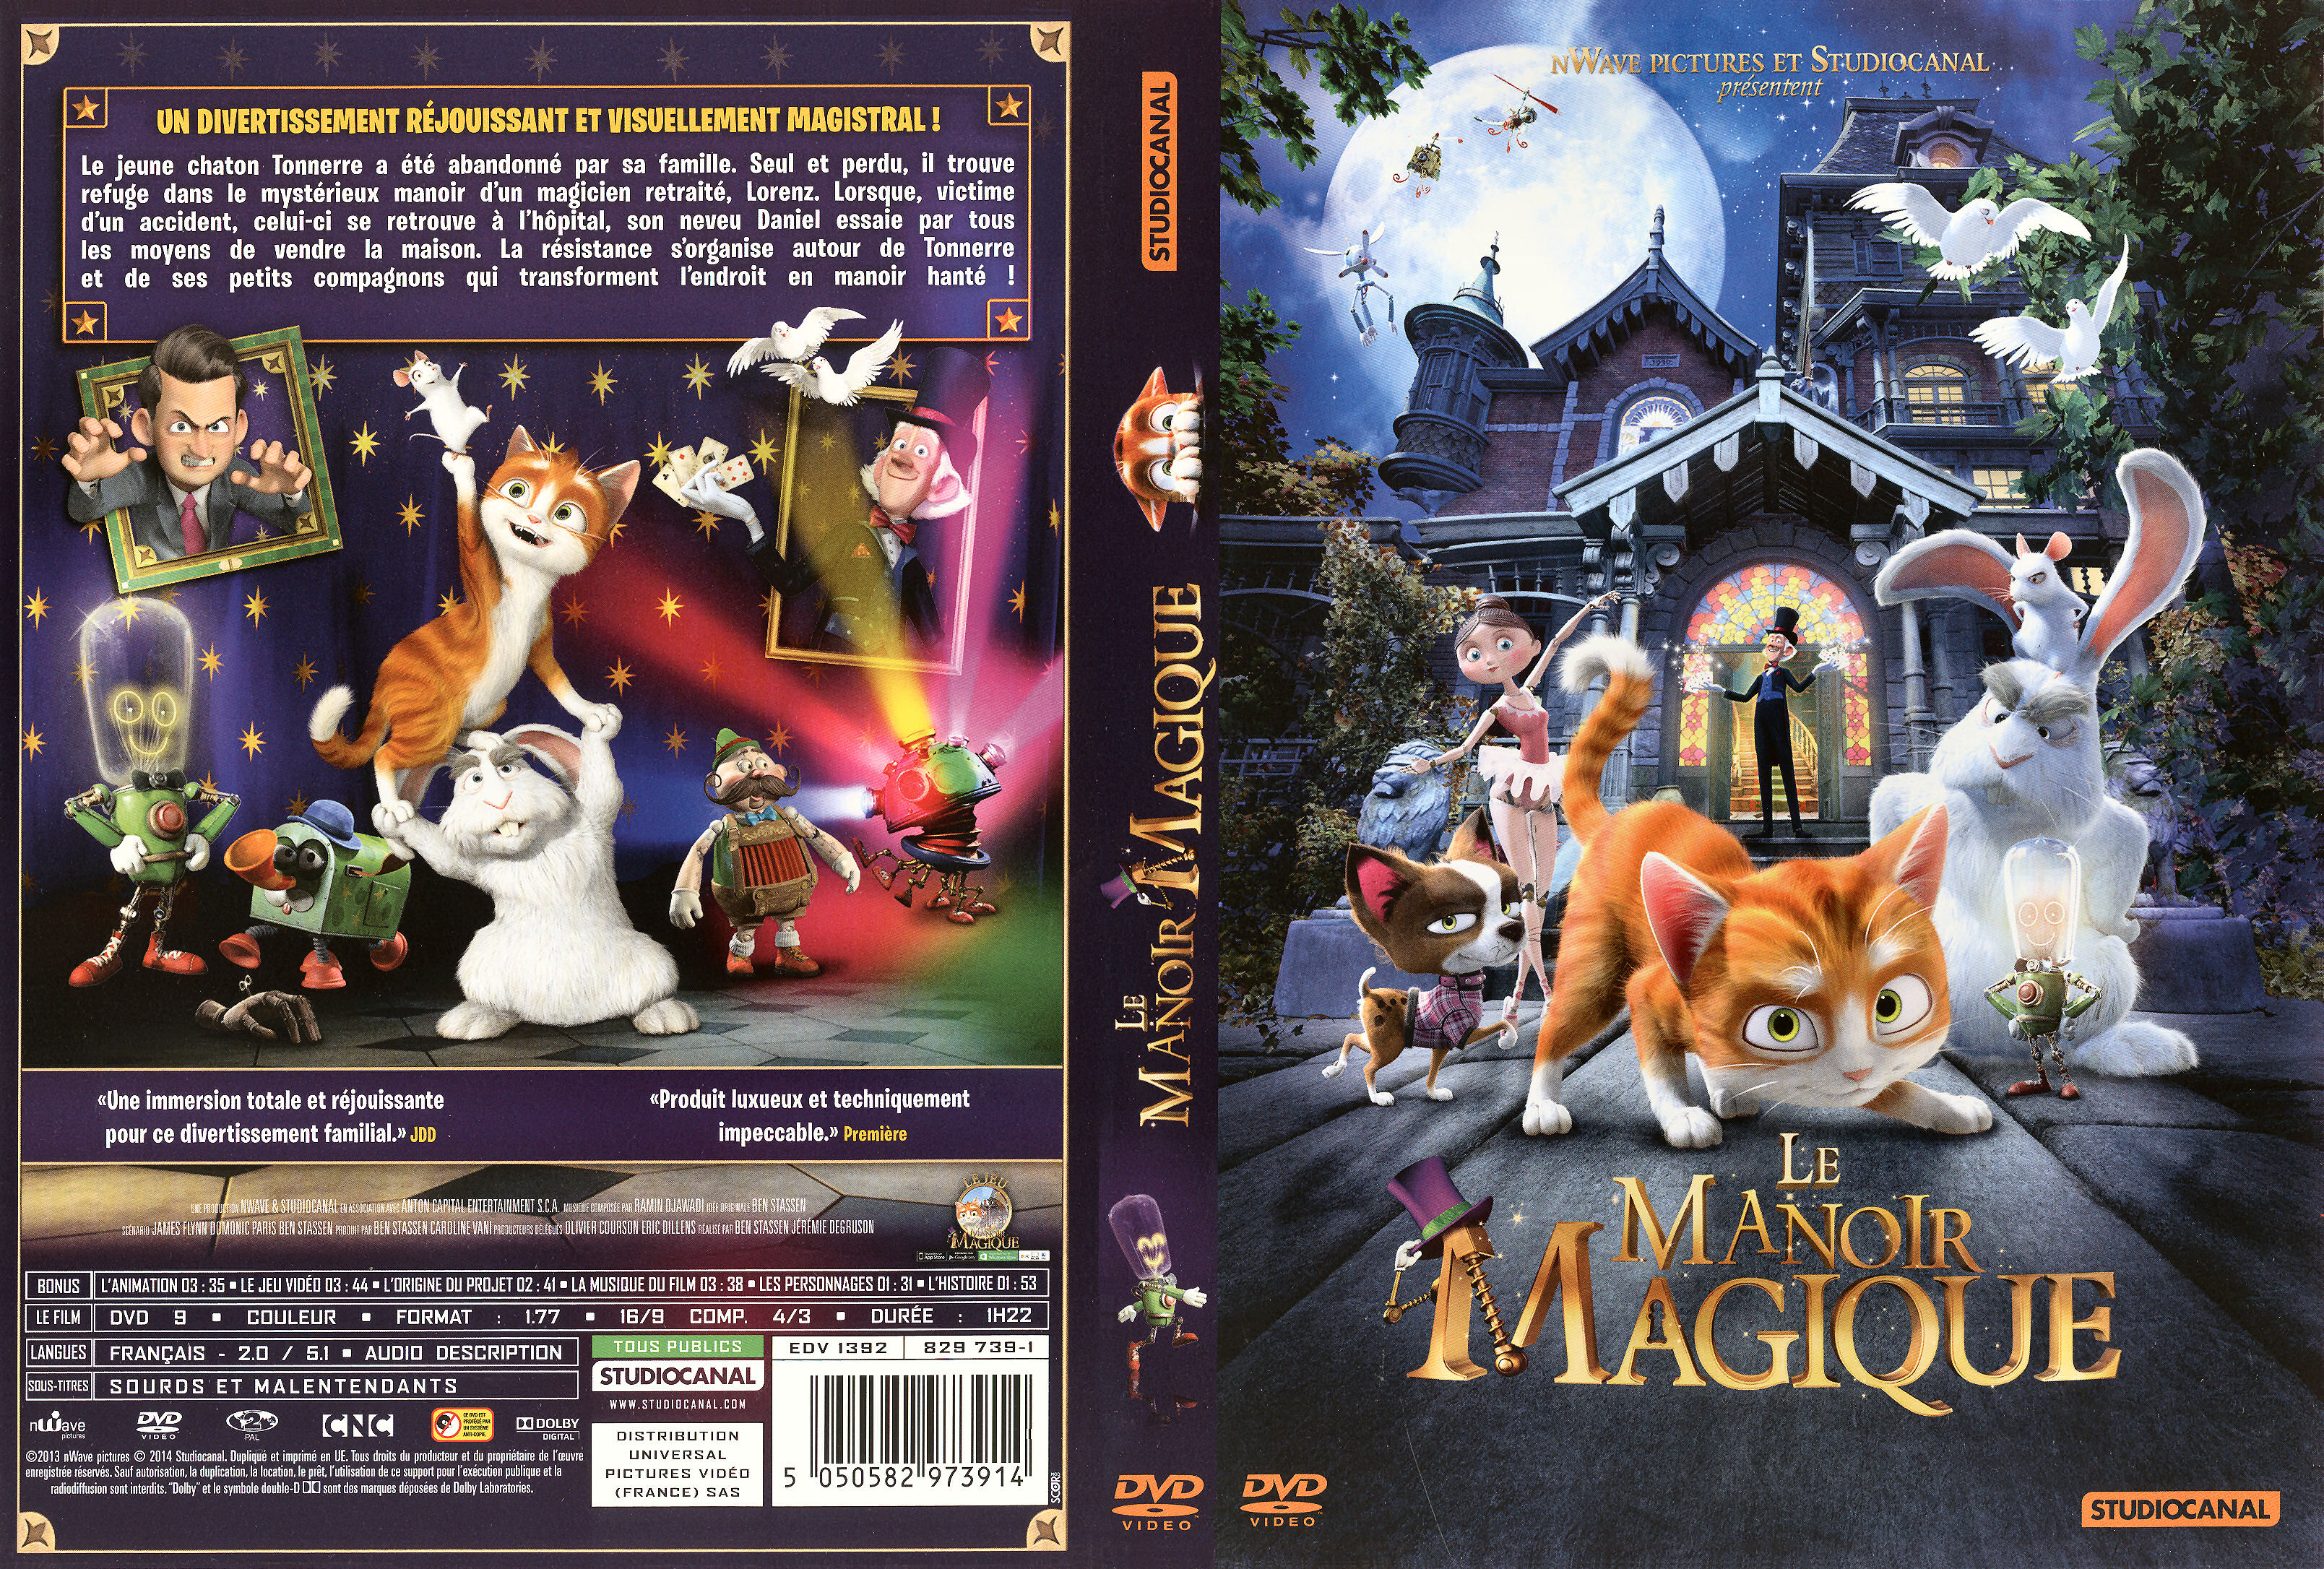 Jaquette DVD Le Manoir magique